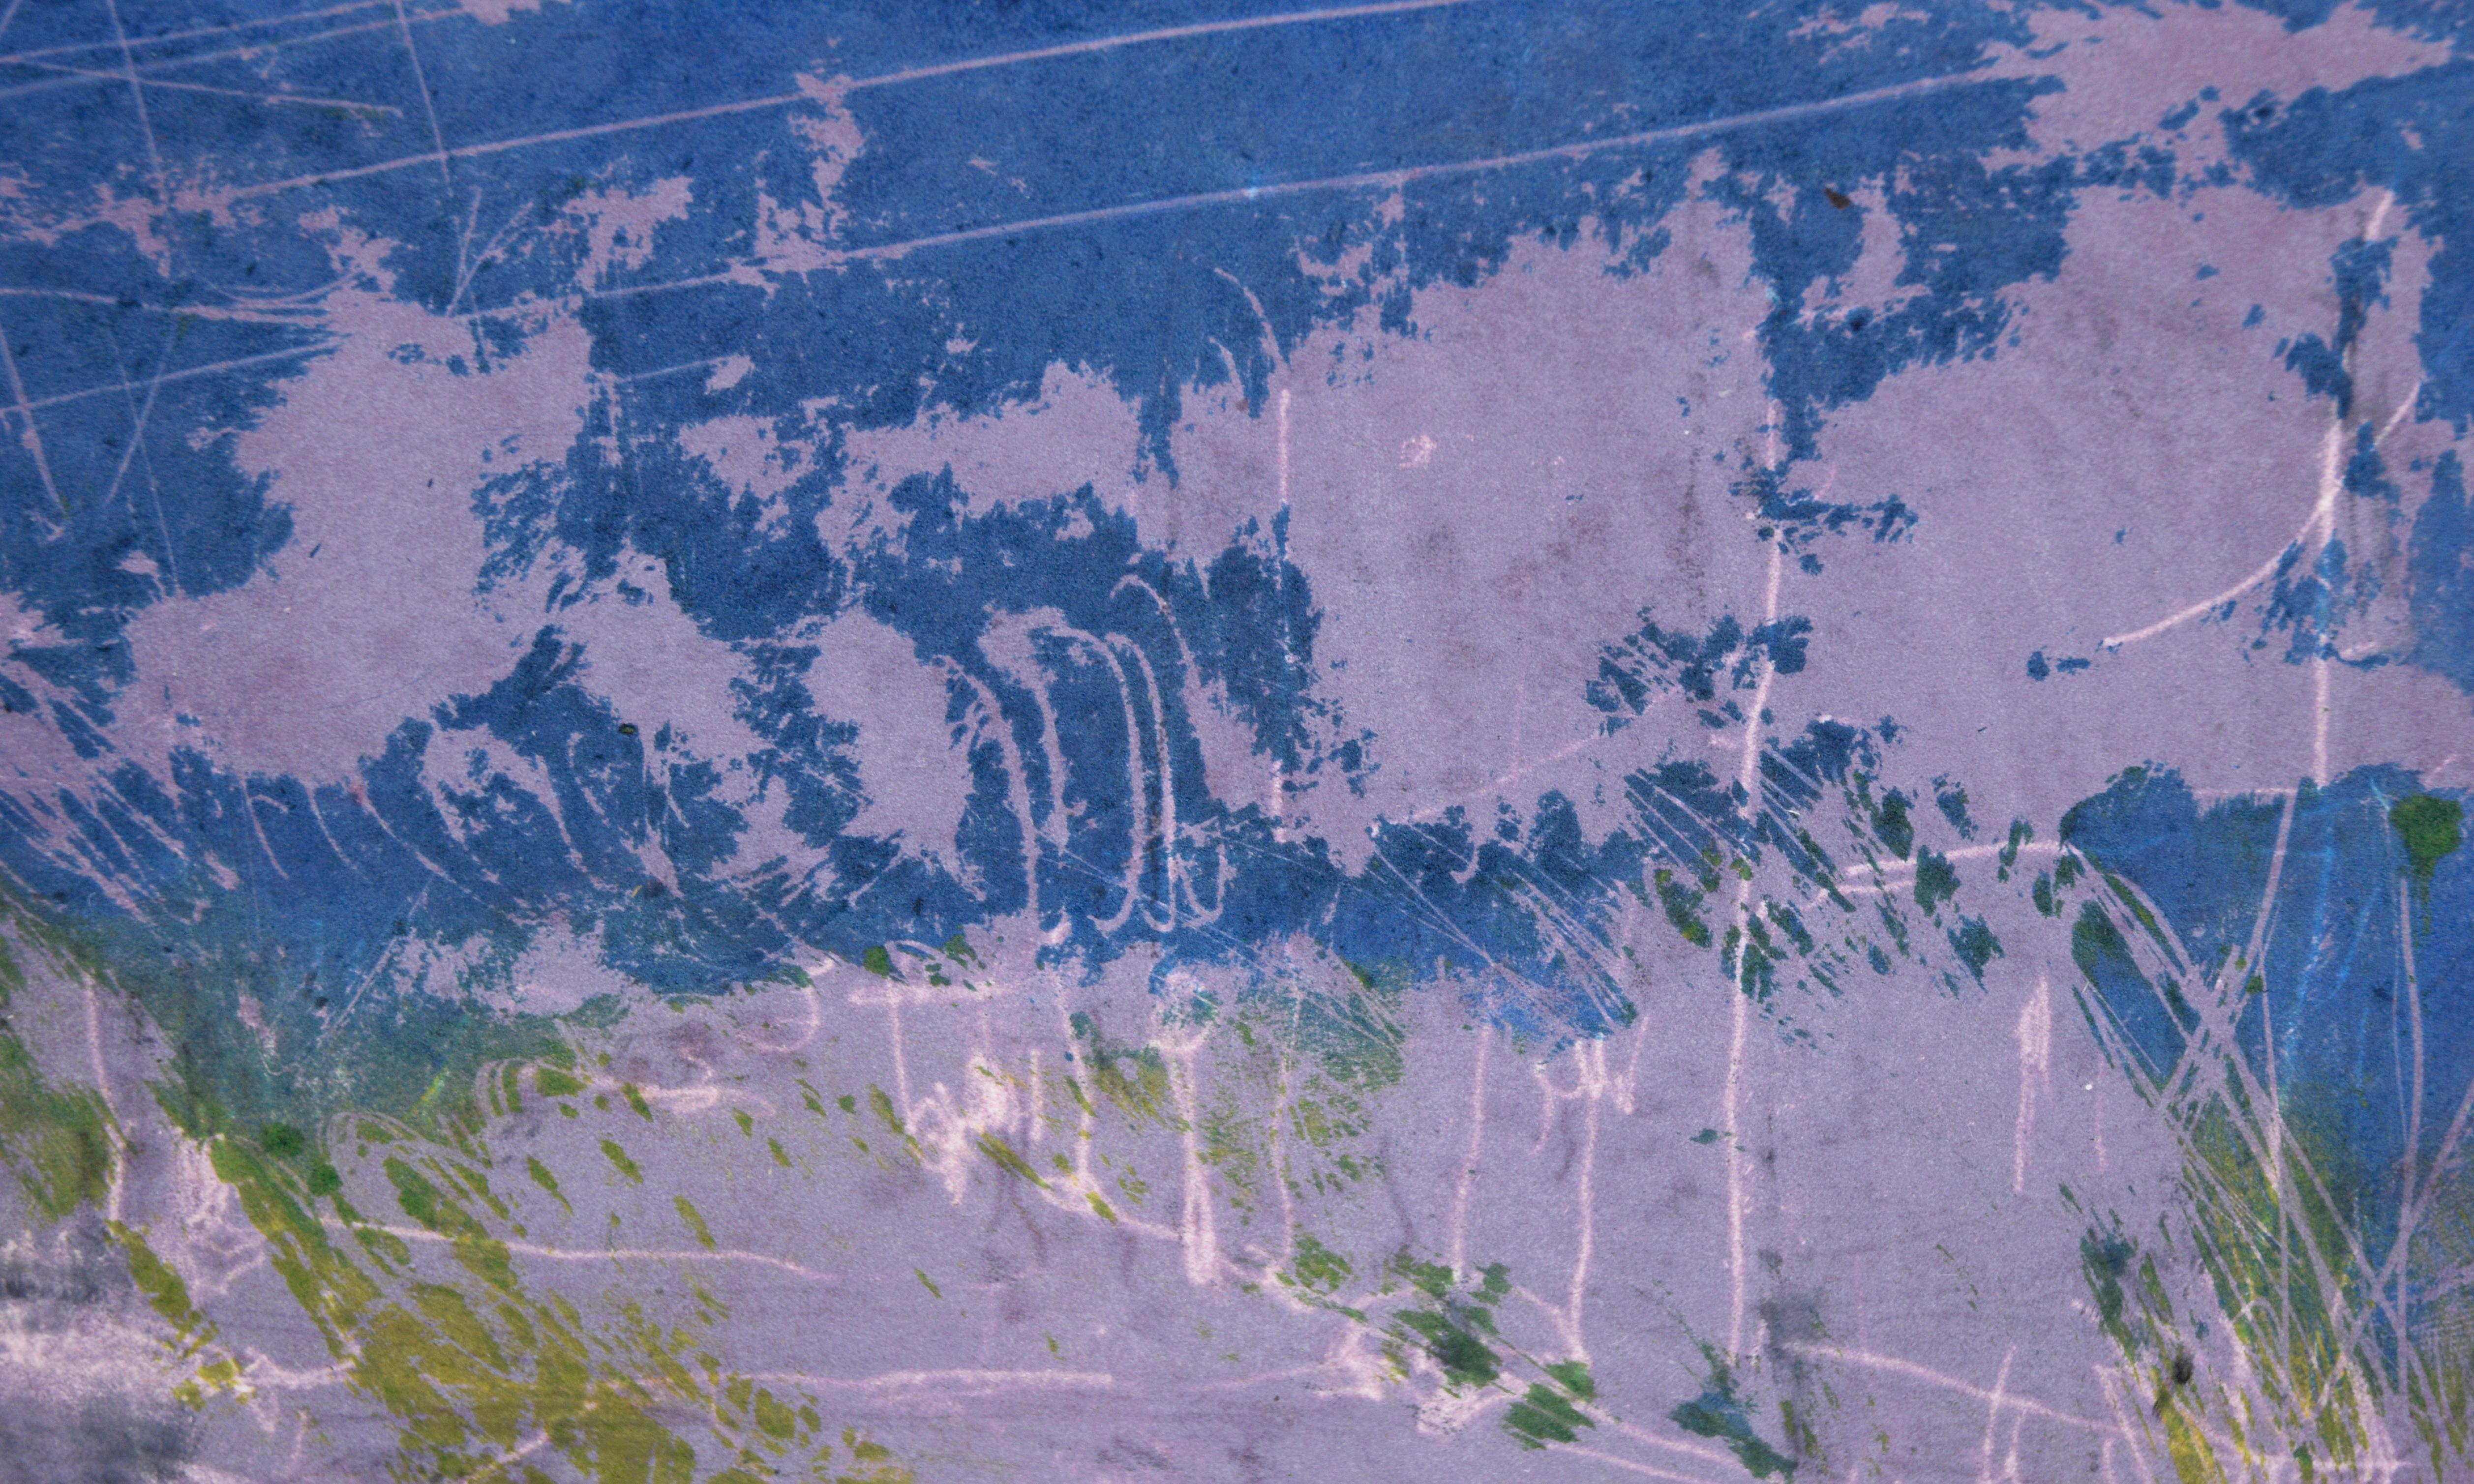 Abstrakte Stadtlandschaft – Transfer-Monotypie in Öl auf Papier

Original-Transfer-Monotypie der kalifornischen Künstlerin Heather Speck (Amerikanerin, 20. Jh.). Eine abstrahierte Straßenszene ist in Dunkelblau, Lila und Grün dargestellt. Der Himmel